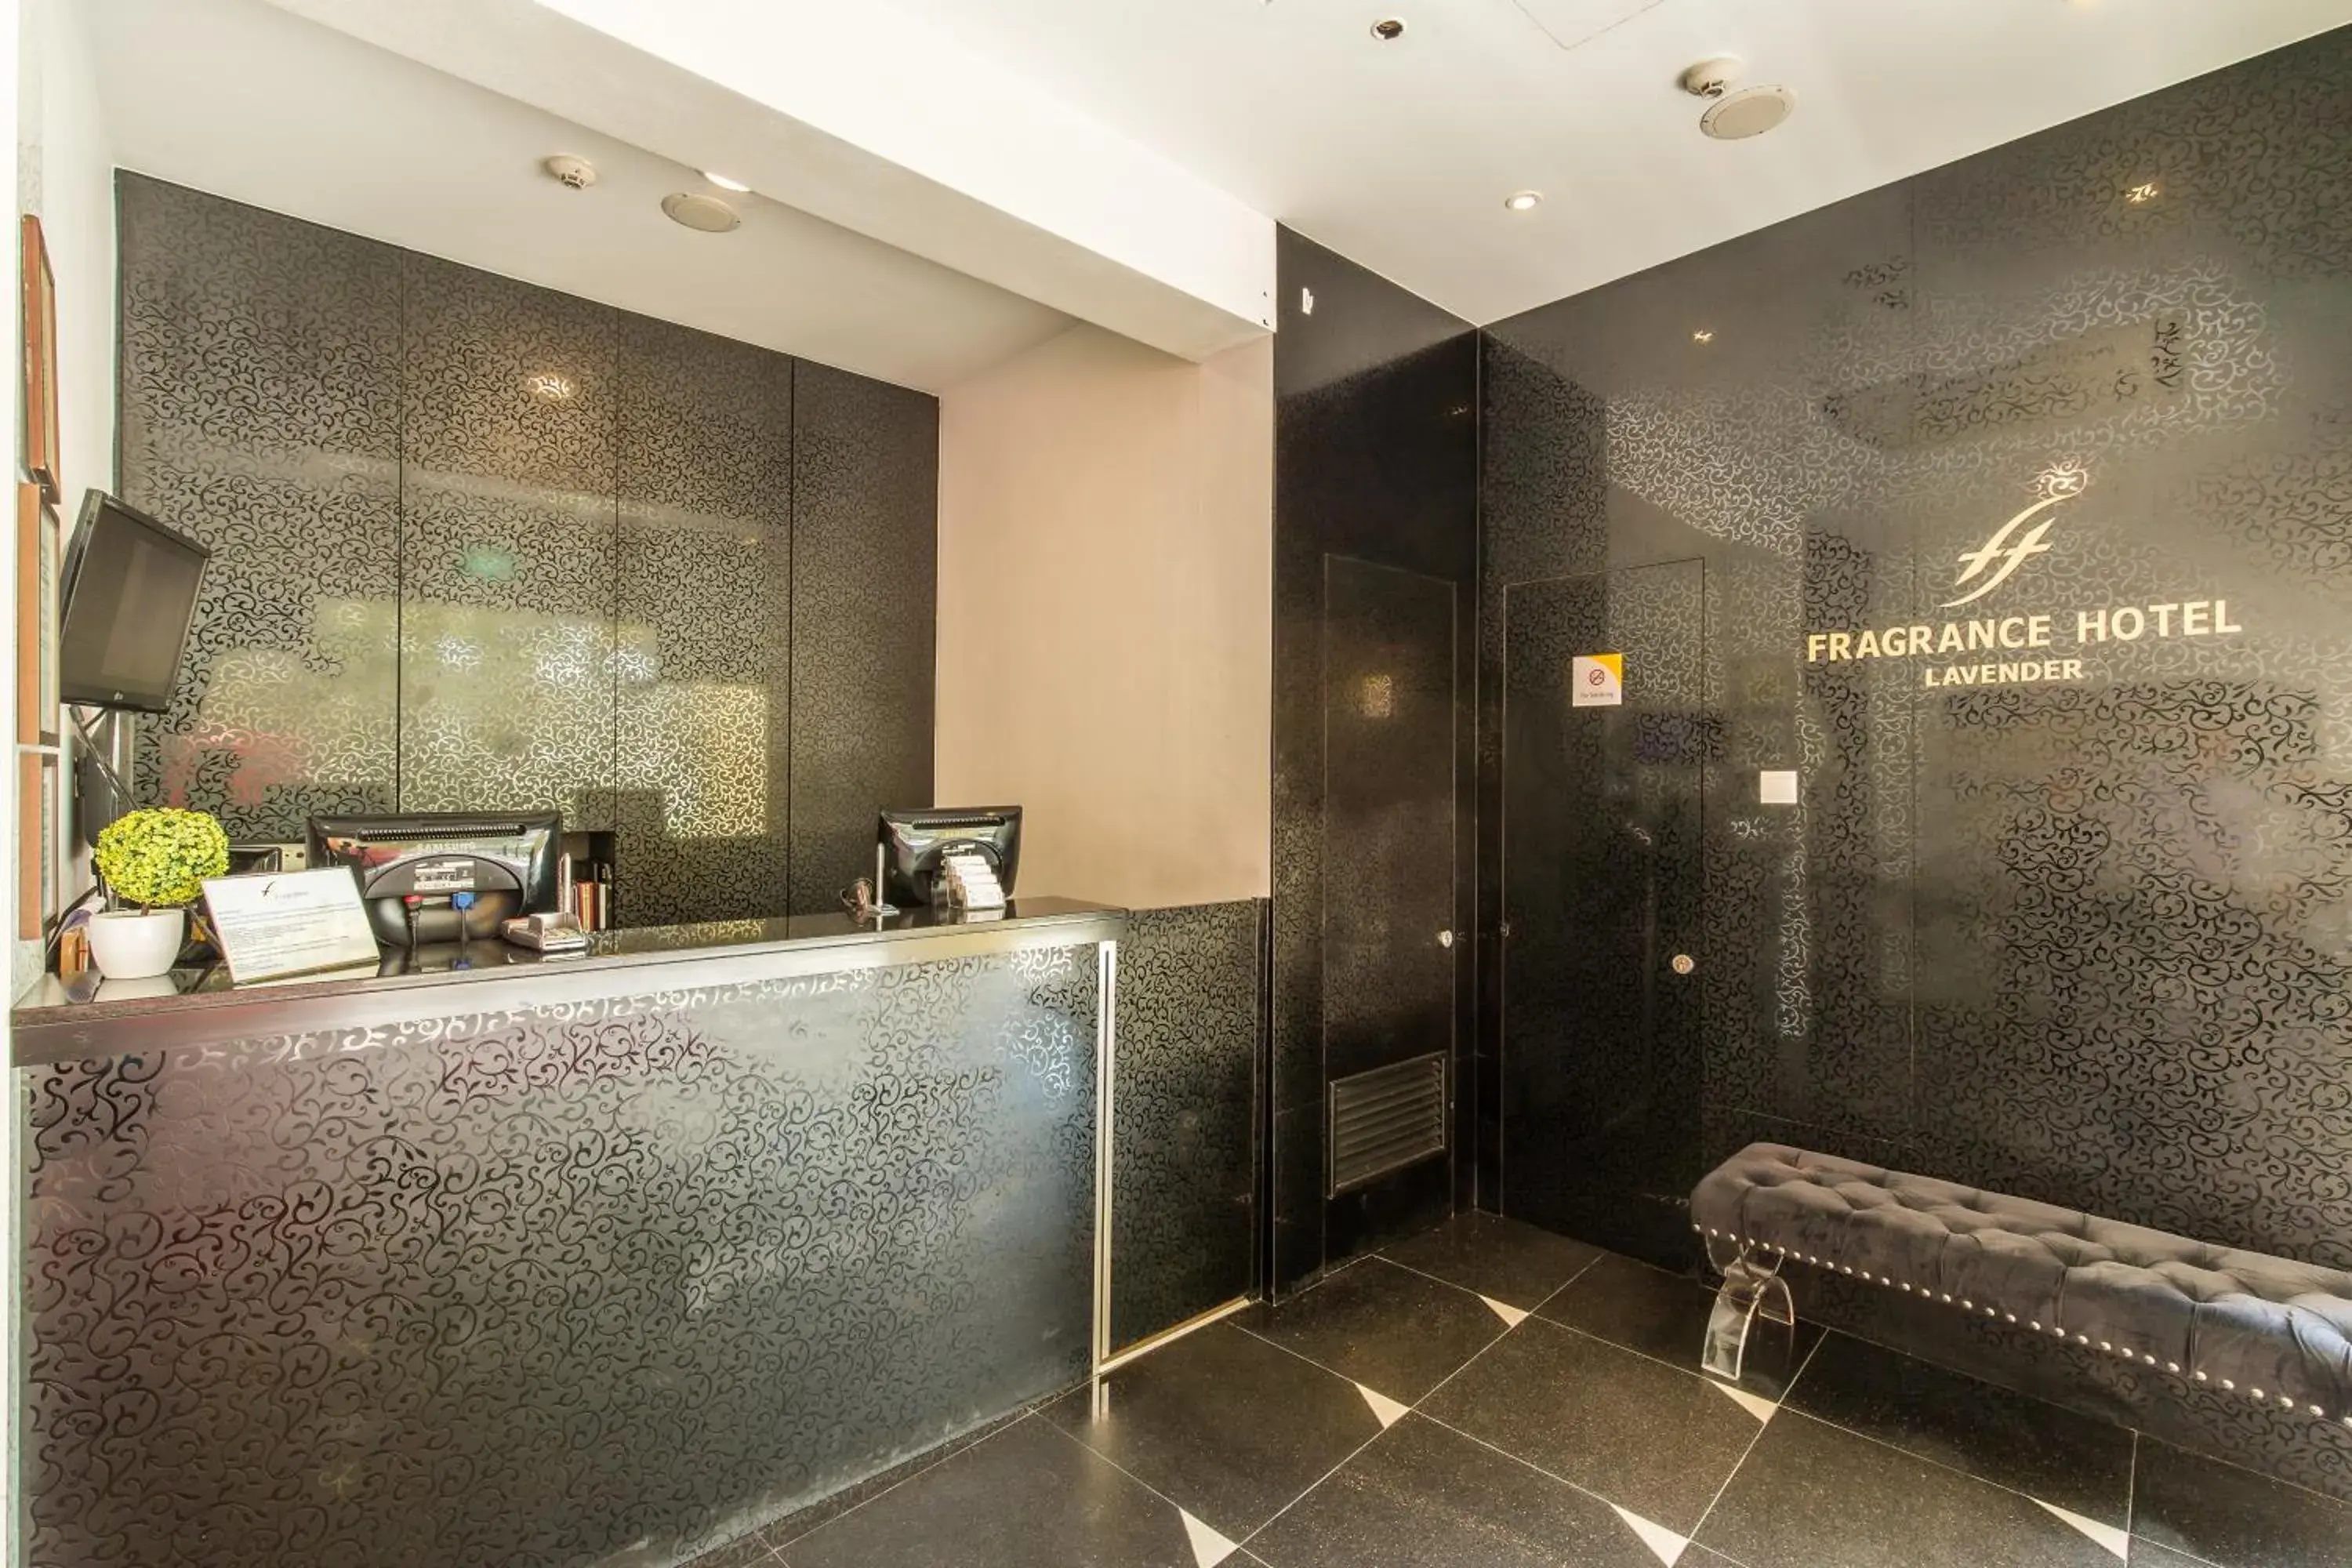 Lobby or reception, Bathroom in Fragrance Hotel - Lavender